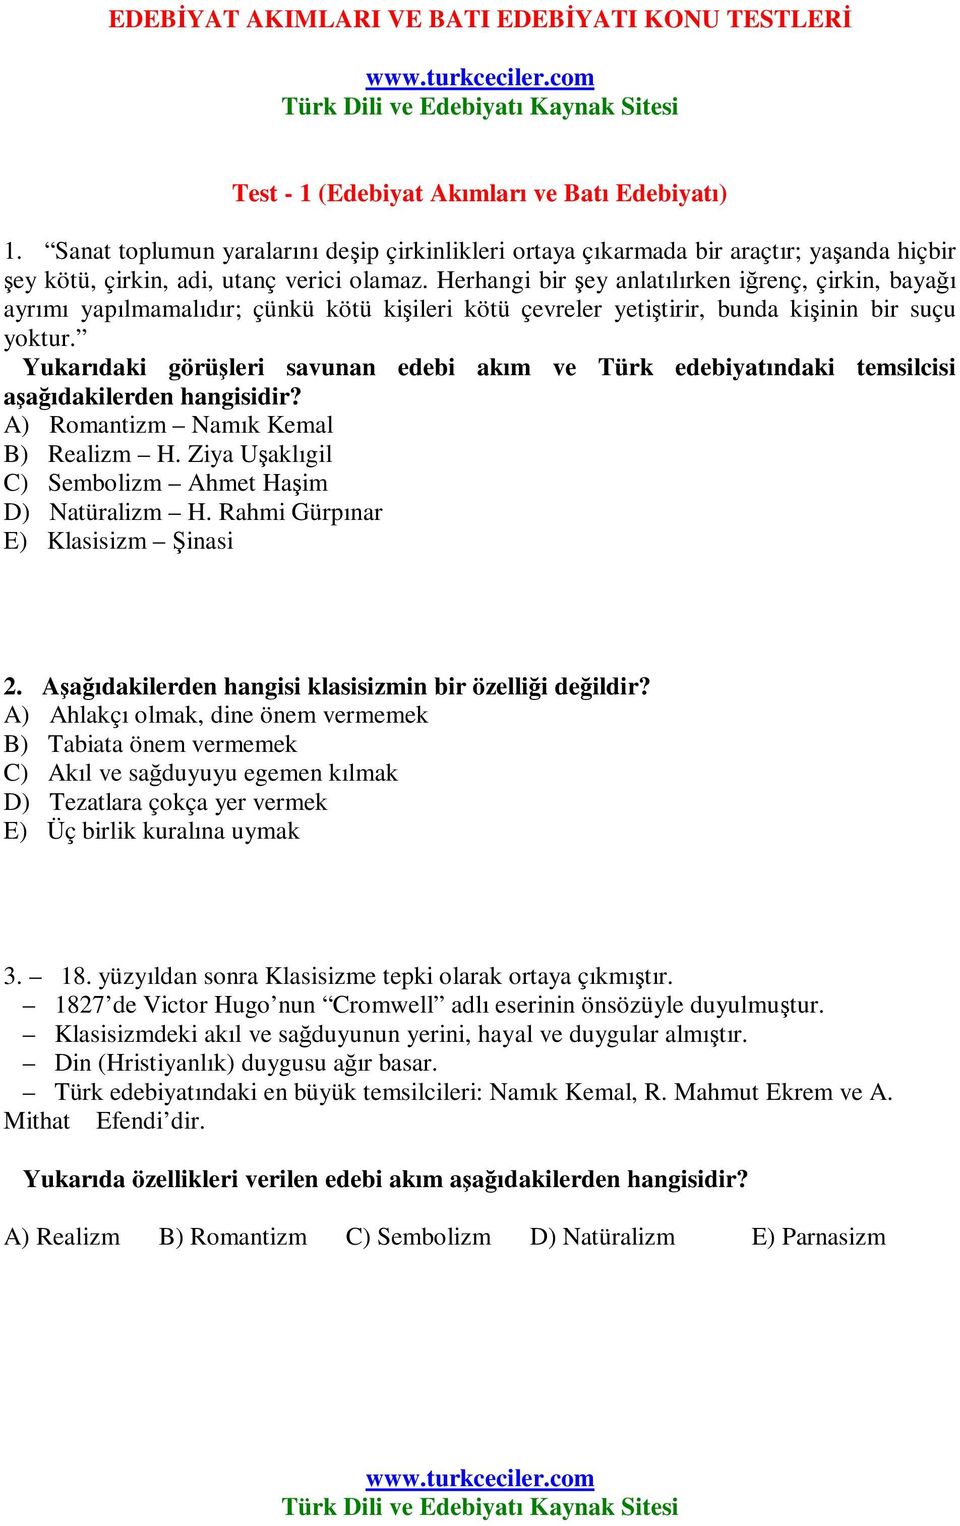 Türk Dili ve Edebiyatı Kaynak Sitesi Test - 1 (Edebiyat Akımları ve Batı  Edebiyatı) - PDF Ücretsiz indirin